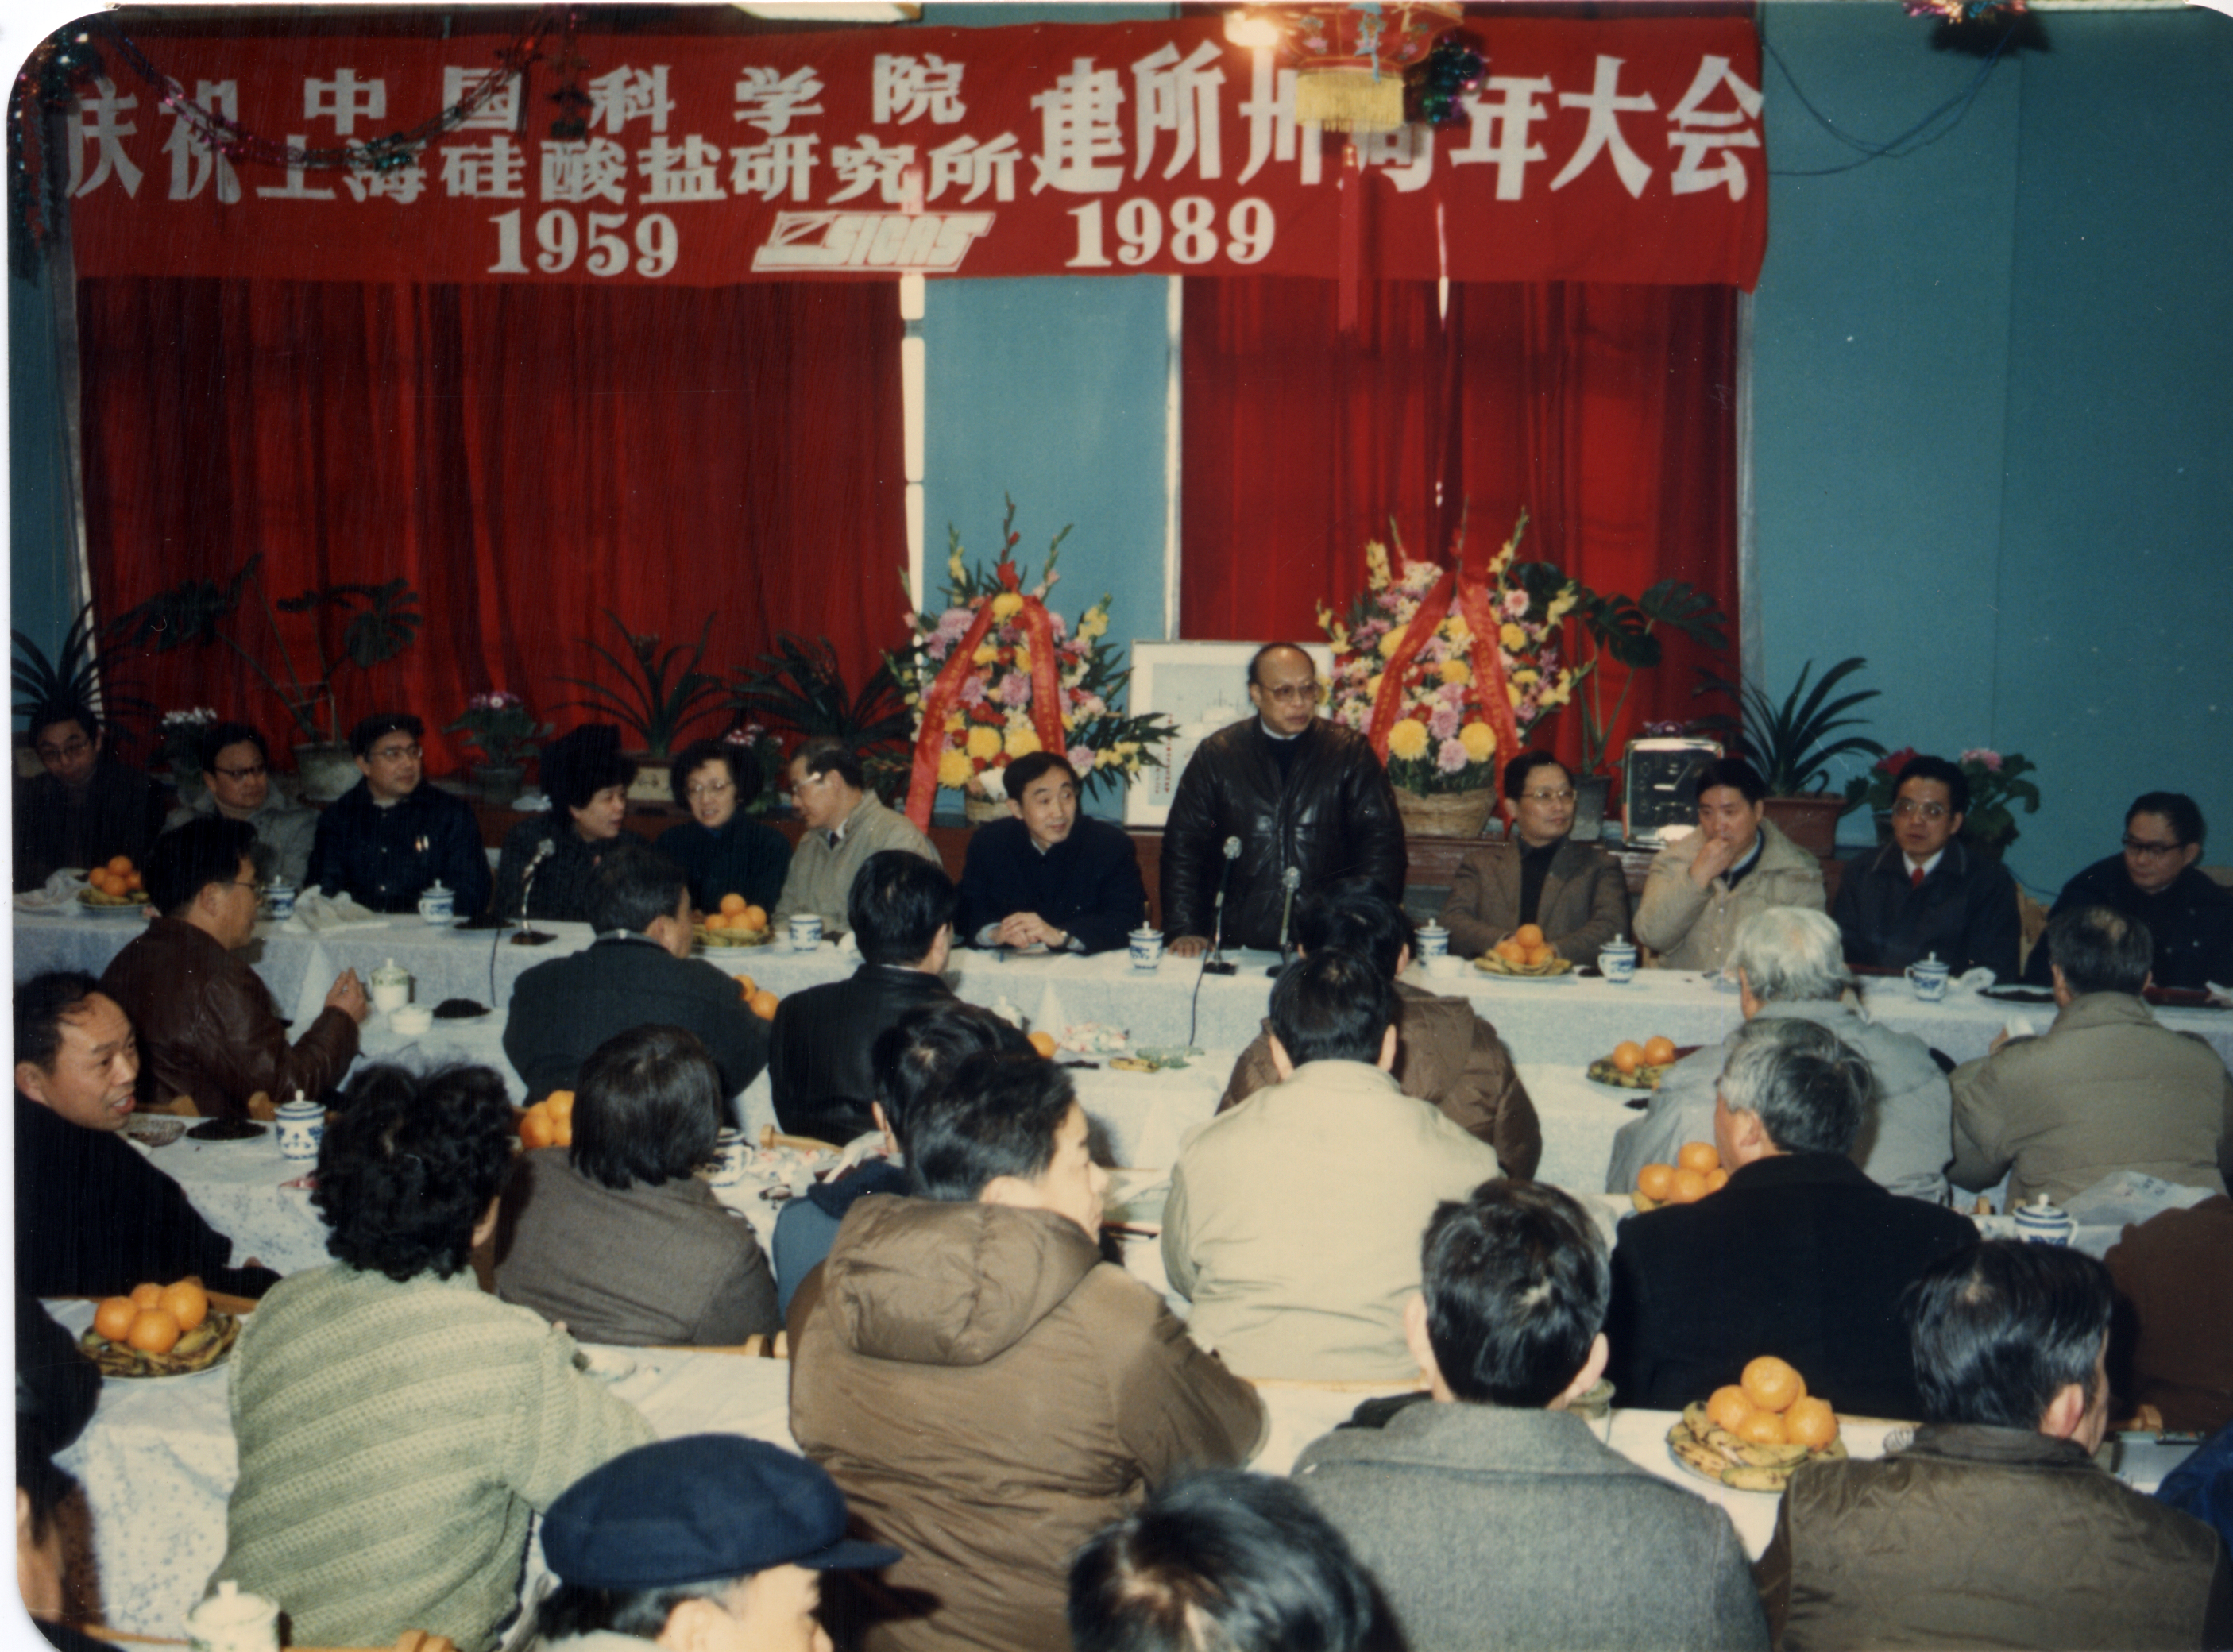 1989年郭景坤在上海硅酸盐所建所30周年庆祝大会上讲话.jpg